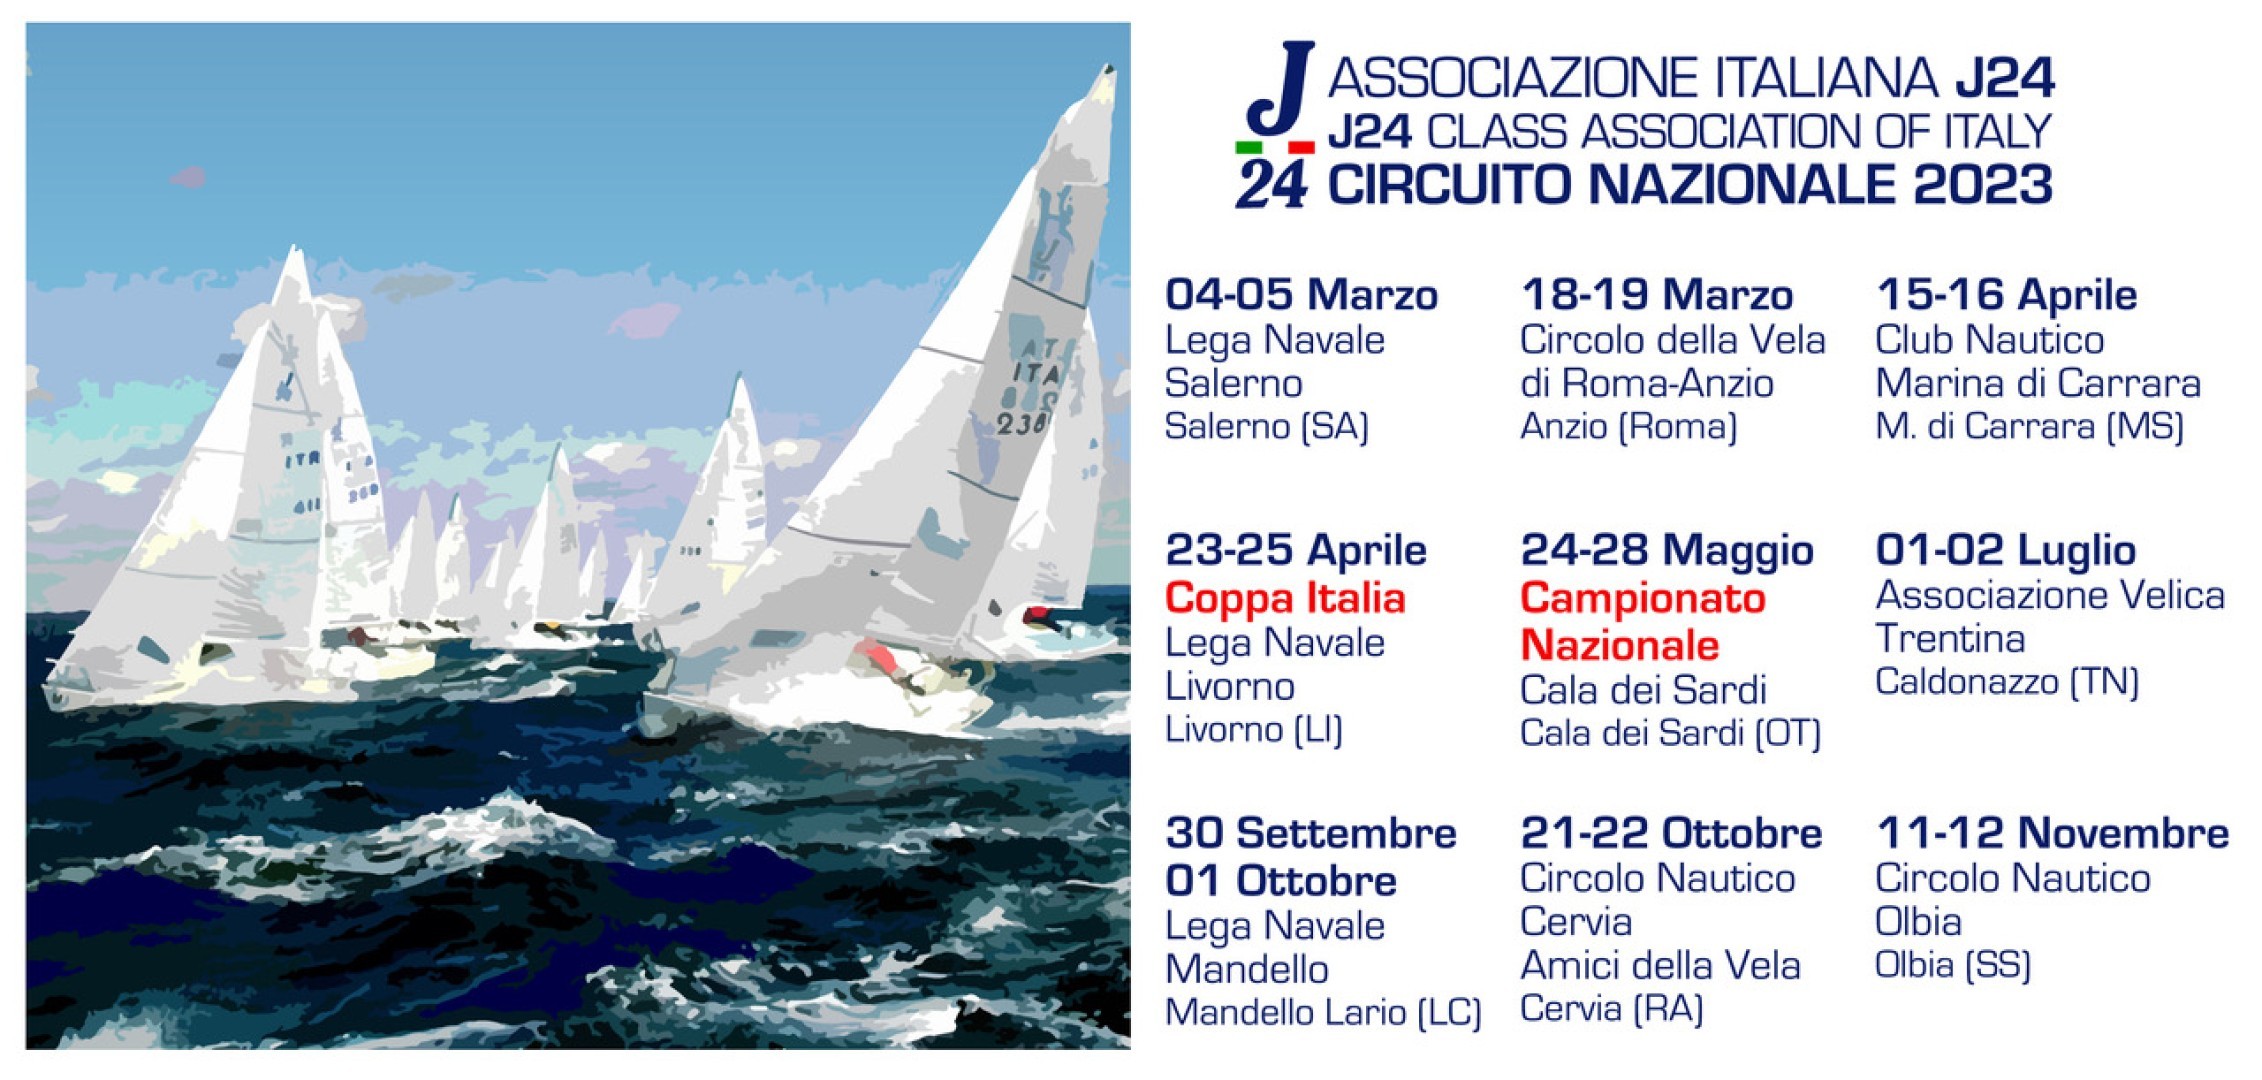 Il Circuito Nazionale 2023 della Classe Italiana J24, fra riconferme e novità